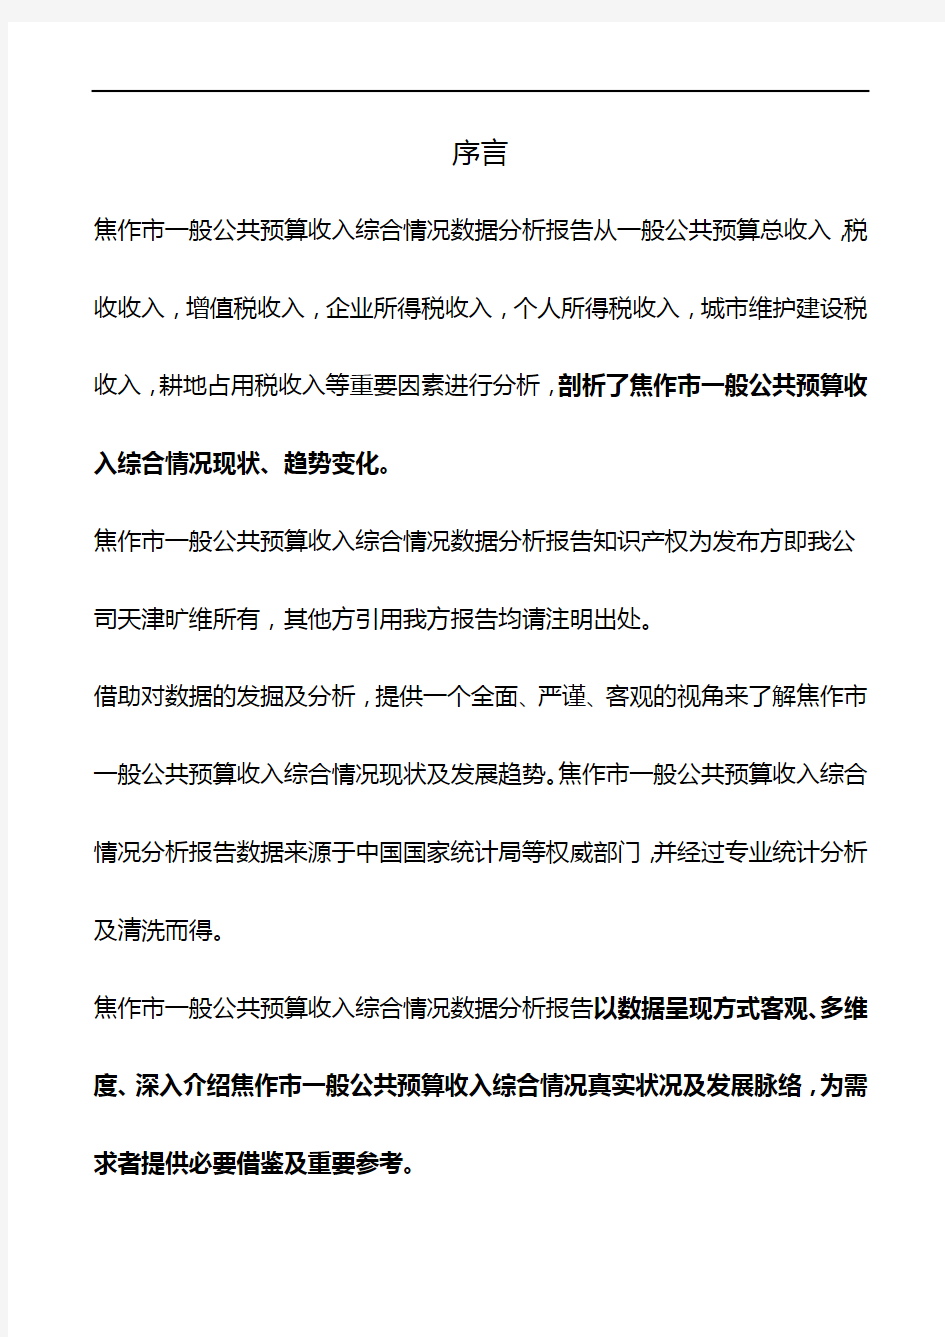 河南省焦作市一般公共预算收入综合情况数据分析报告2019版